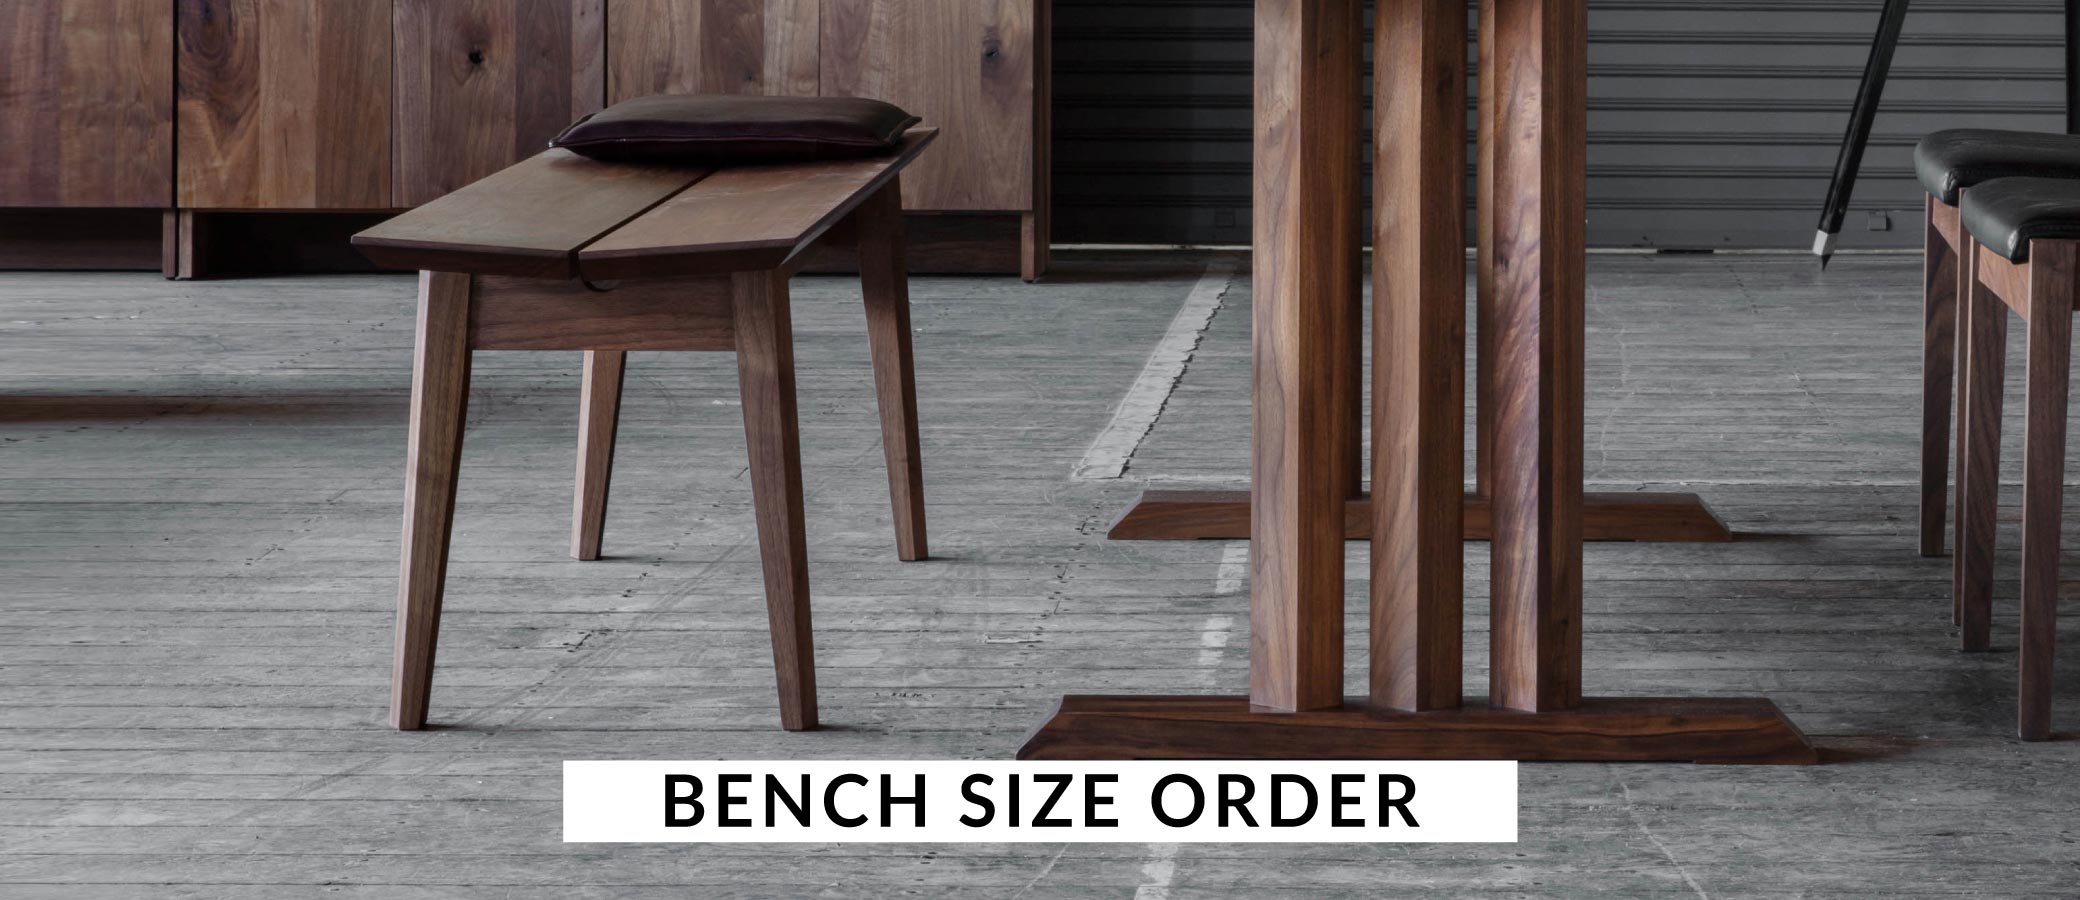 名古屋栄にあるSOLID。そのすべてが注文を受けて製作するセミオーダーの家具です。テーブルに合わせてベンチのサイズオーダーが可能です。